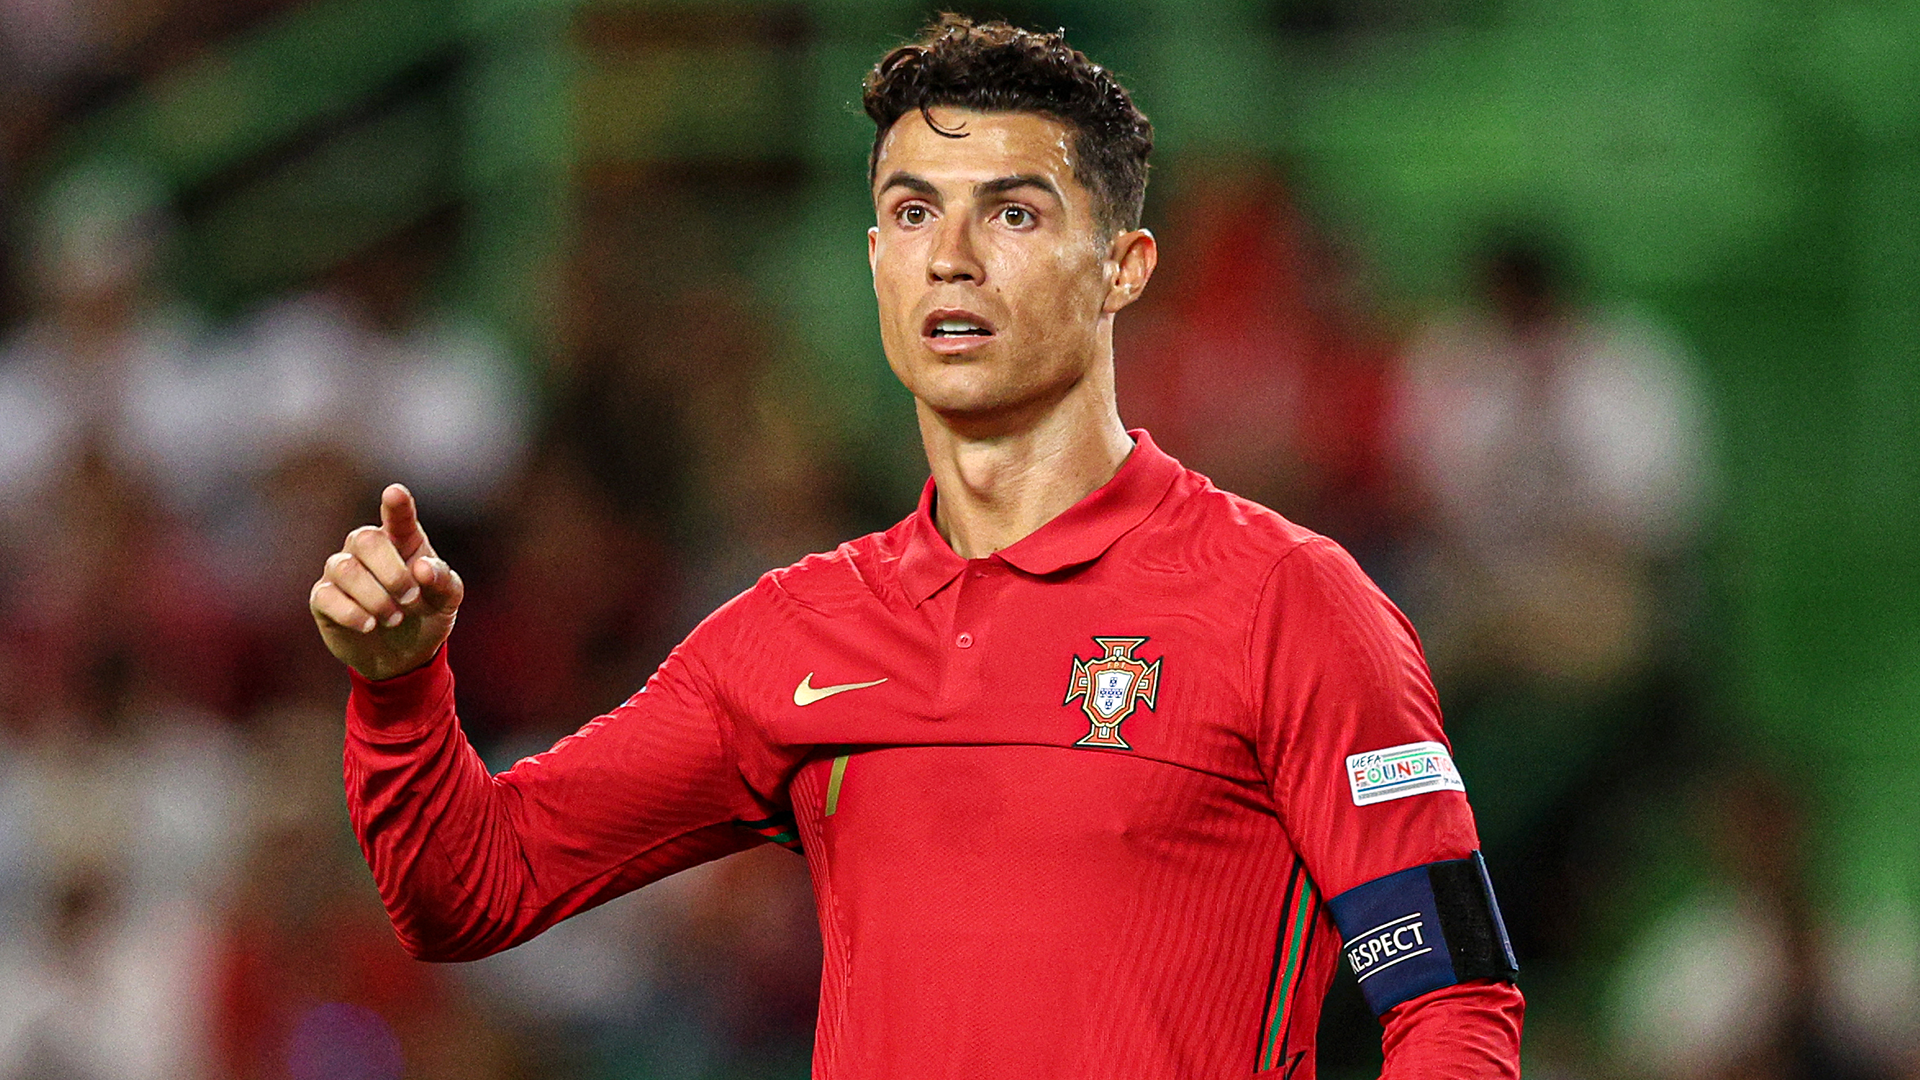 Đội tuyển Bồ Đào Nha với cầu thủ xuất sắc như Ronaldo thật sự là một đối thủ đáng gờm tại World Cup. Nhưng liệu Ronaldo sẽ đảm nhận vị trí thủ lĩnh của đội? Xem hình ảnh này để biết thêm chi tiết và đón xem hành trình của đội tuyển Bồ Đào Nha tại World Cup!